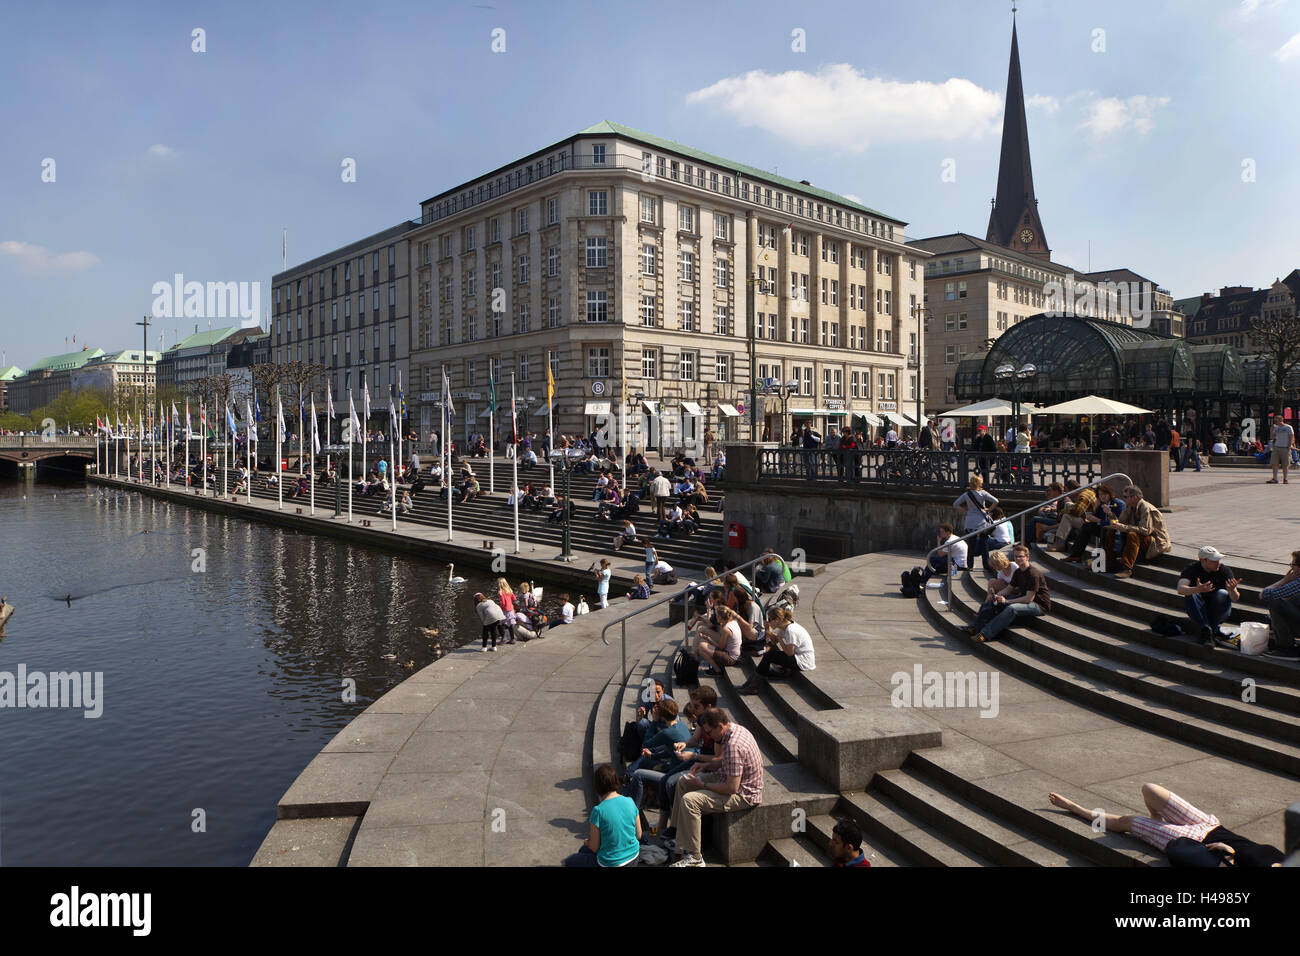 Alemania, la ciudad hanseática de Hamburgo, Jungfernstieg, Ballindamm, turistas, Foto de stock